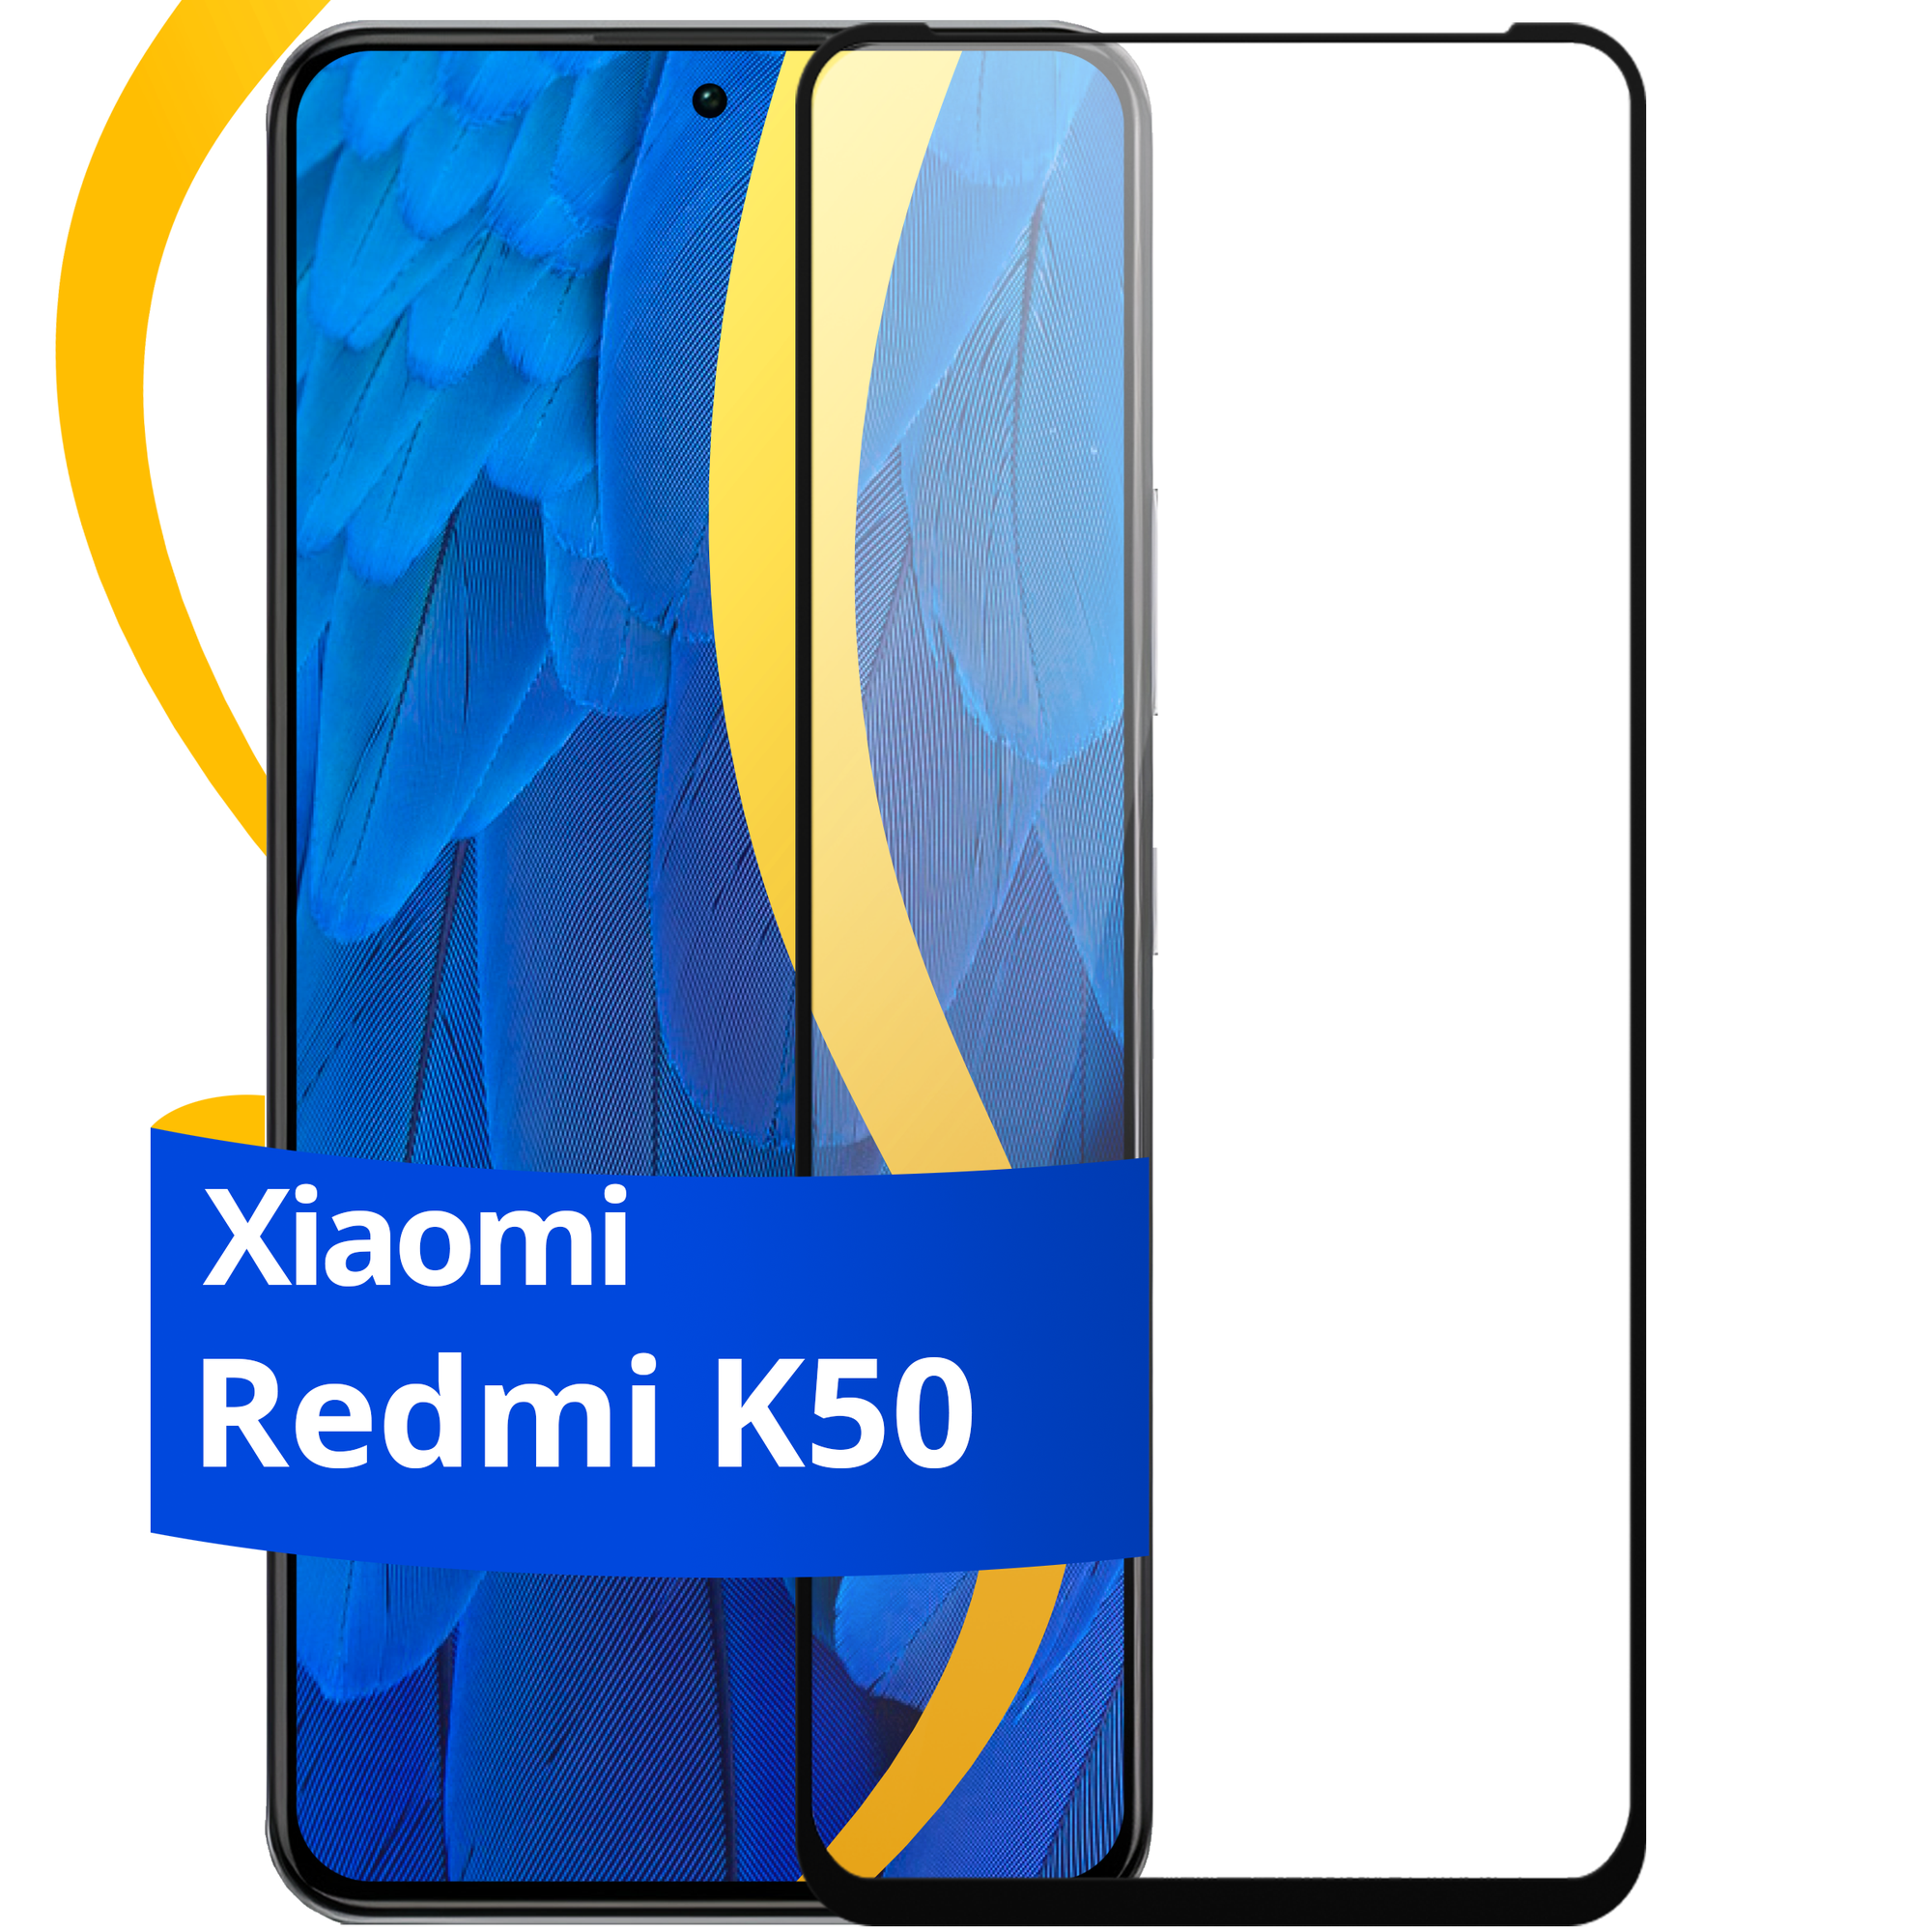 Глянцевое защитное стекло для телефона Xiaomi Redmi K50 / Противоударное стекло с олеофобным покрытием на смартфон Сяоми Редми К50